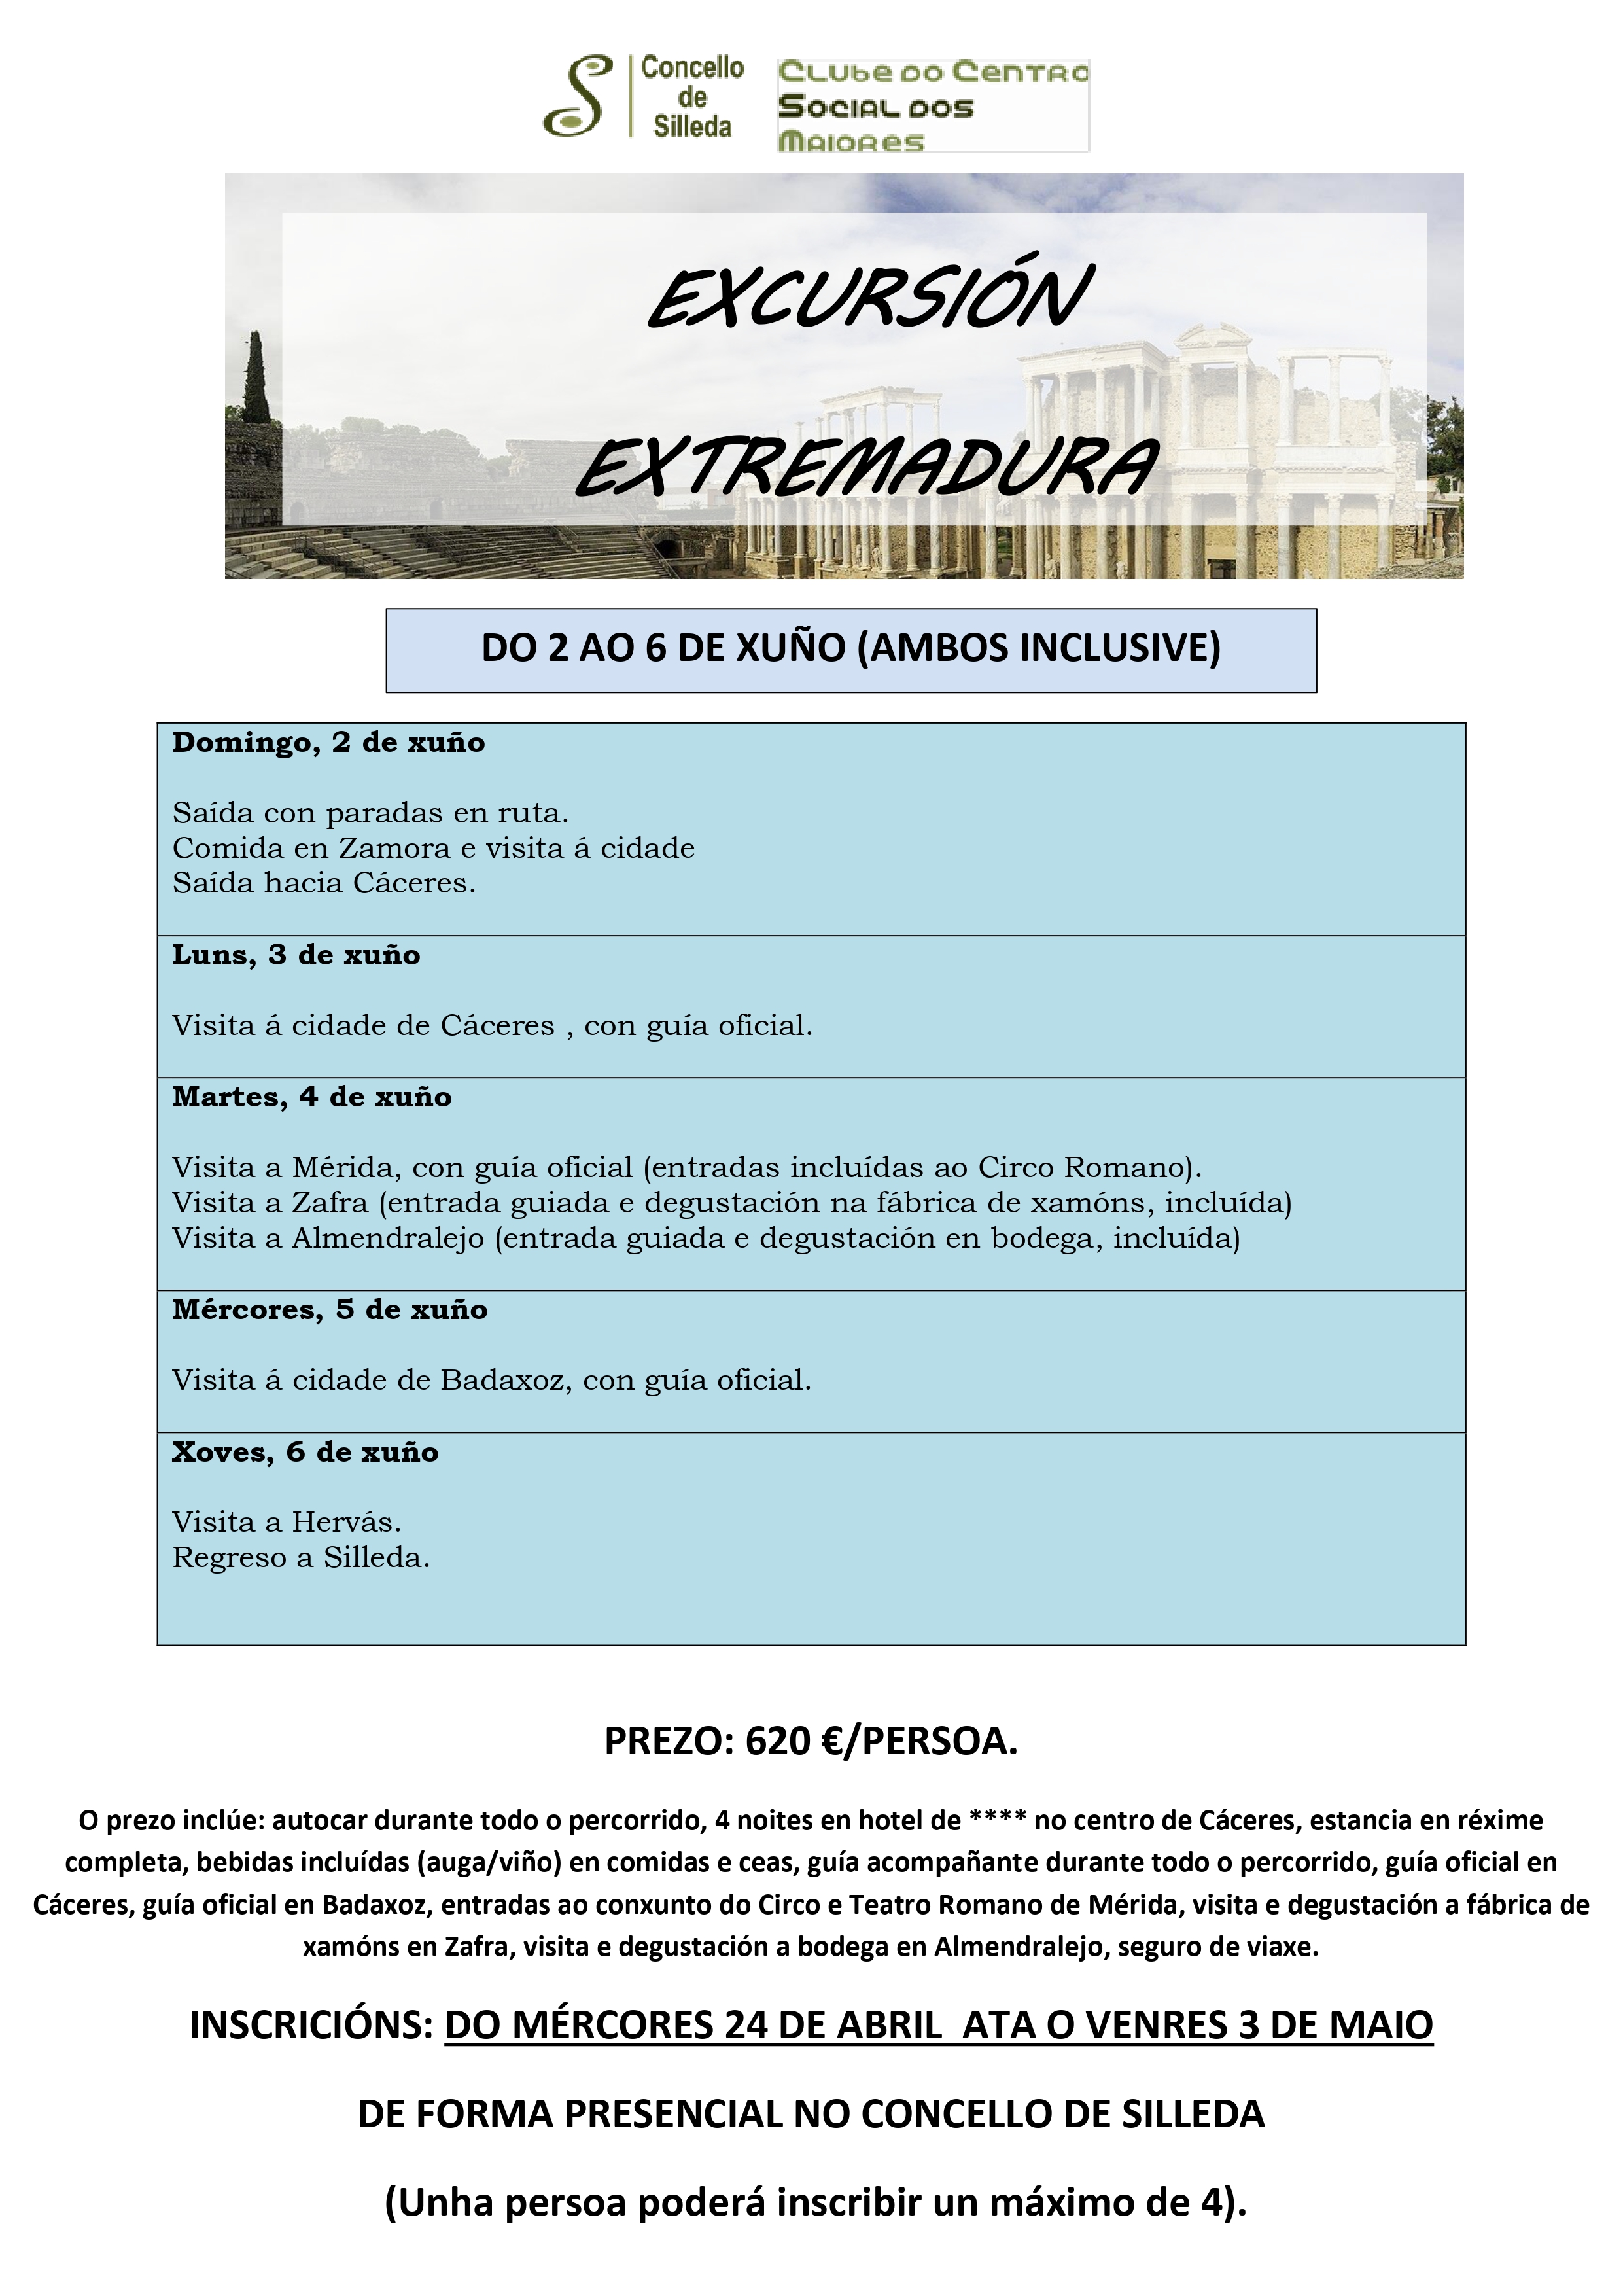 O programa Silleda Activa programa unha excursión a Extremadura a principios de xuño